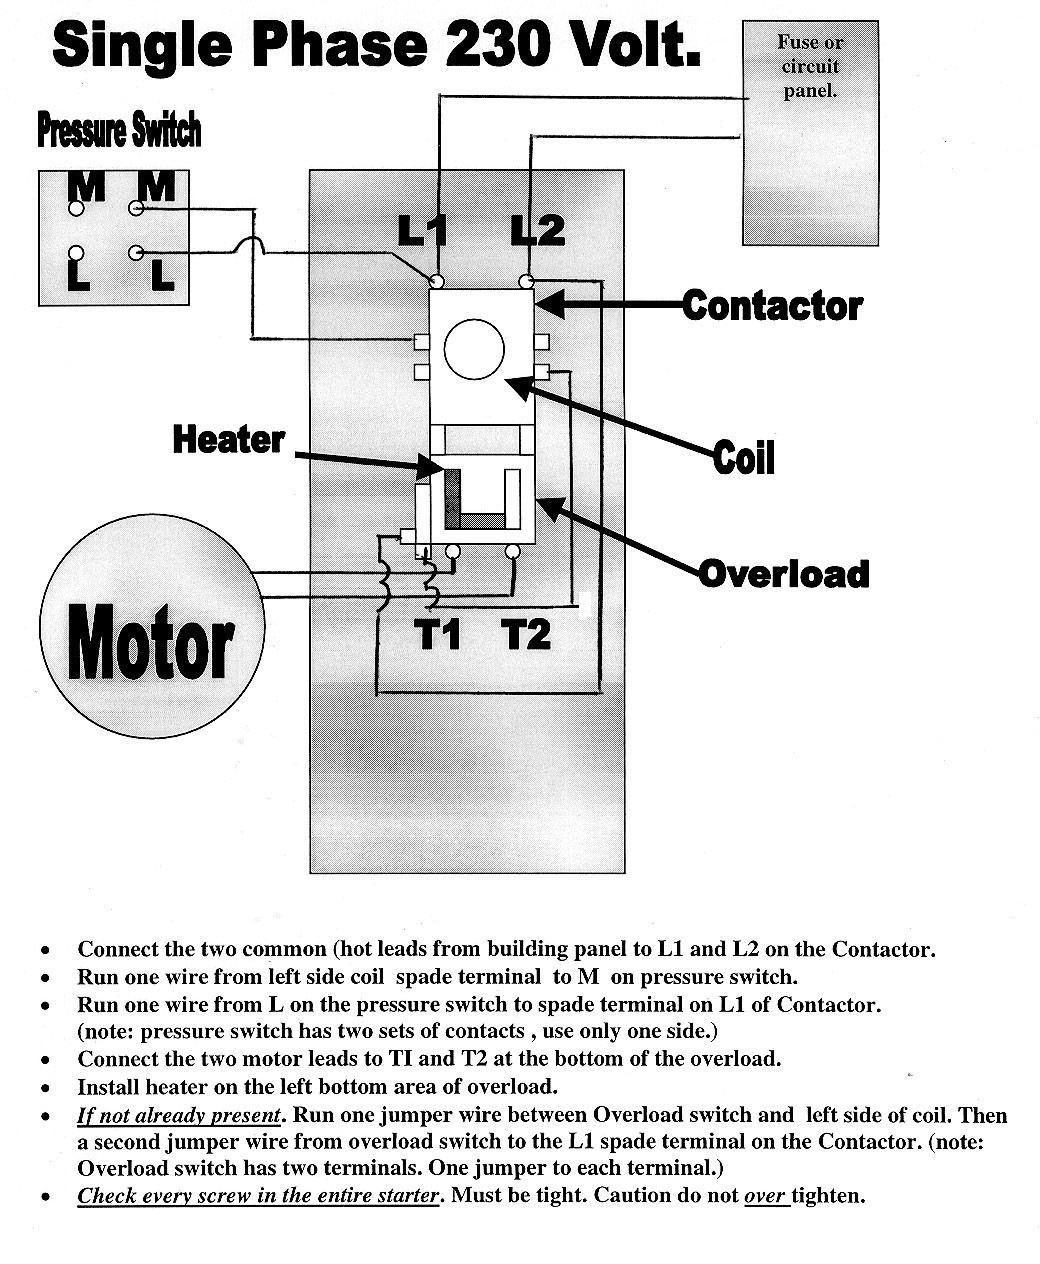 Square D Air pressor Pressure Switch Wiring Diagram